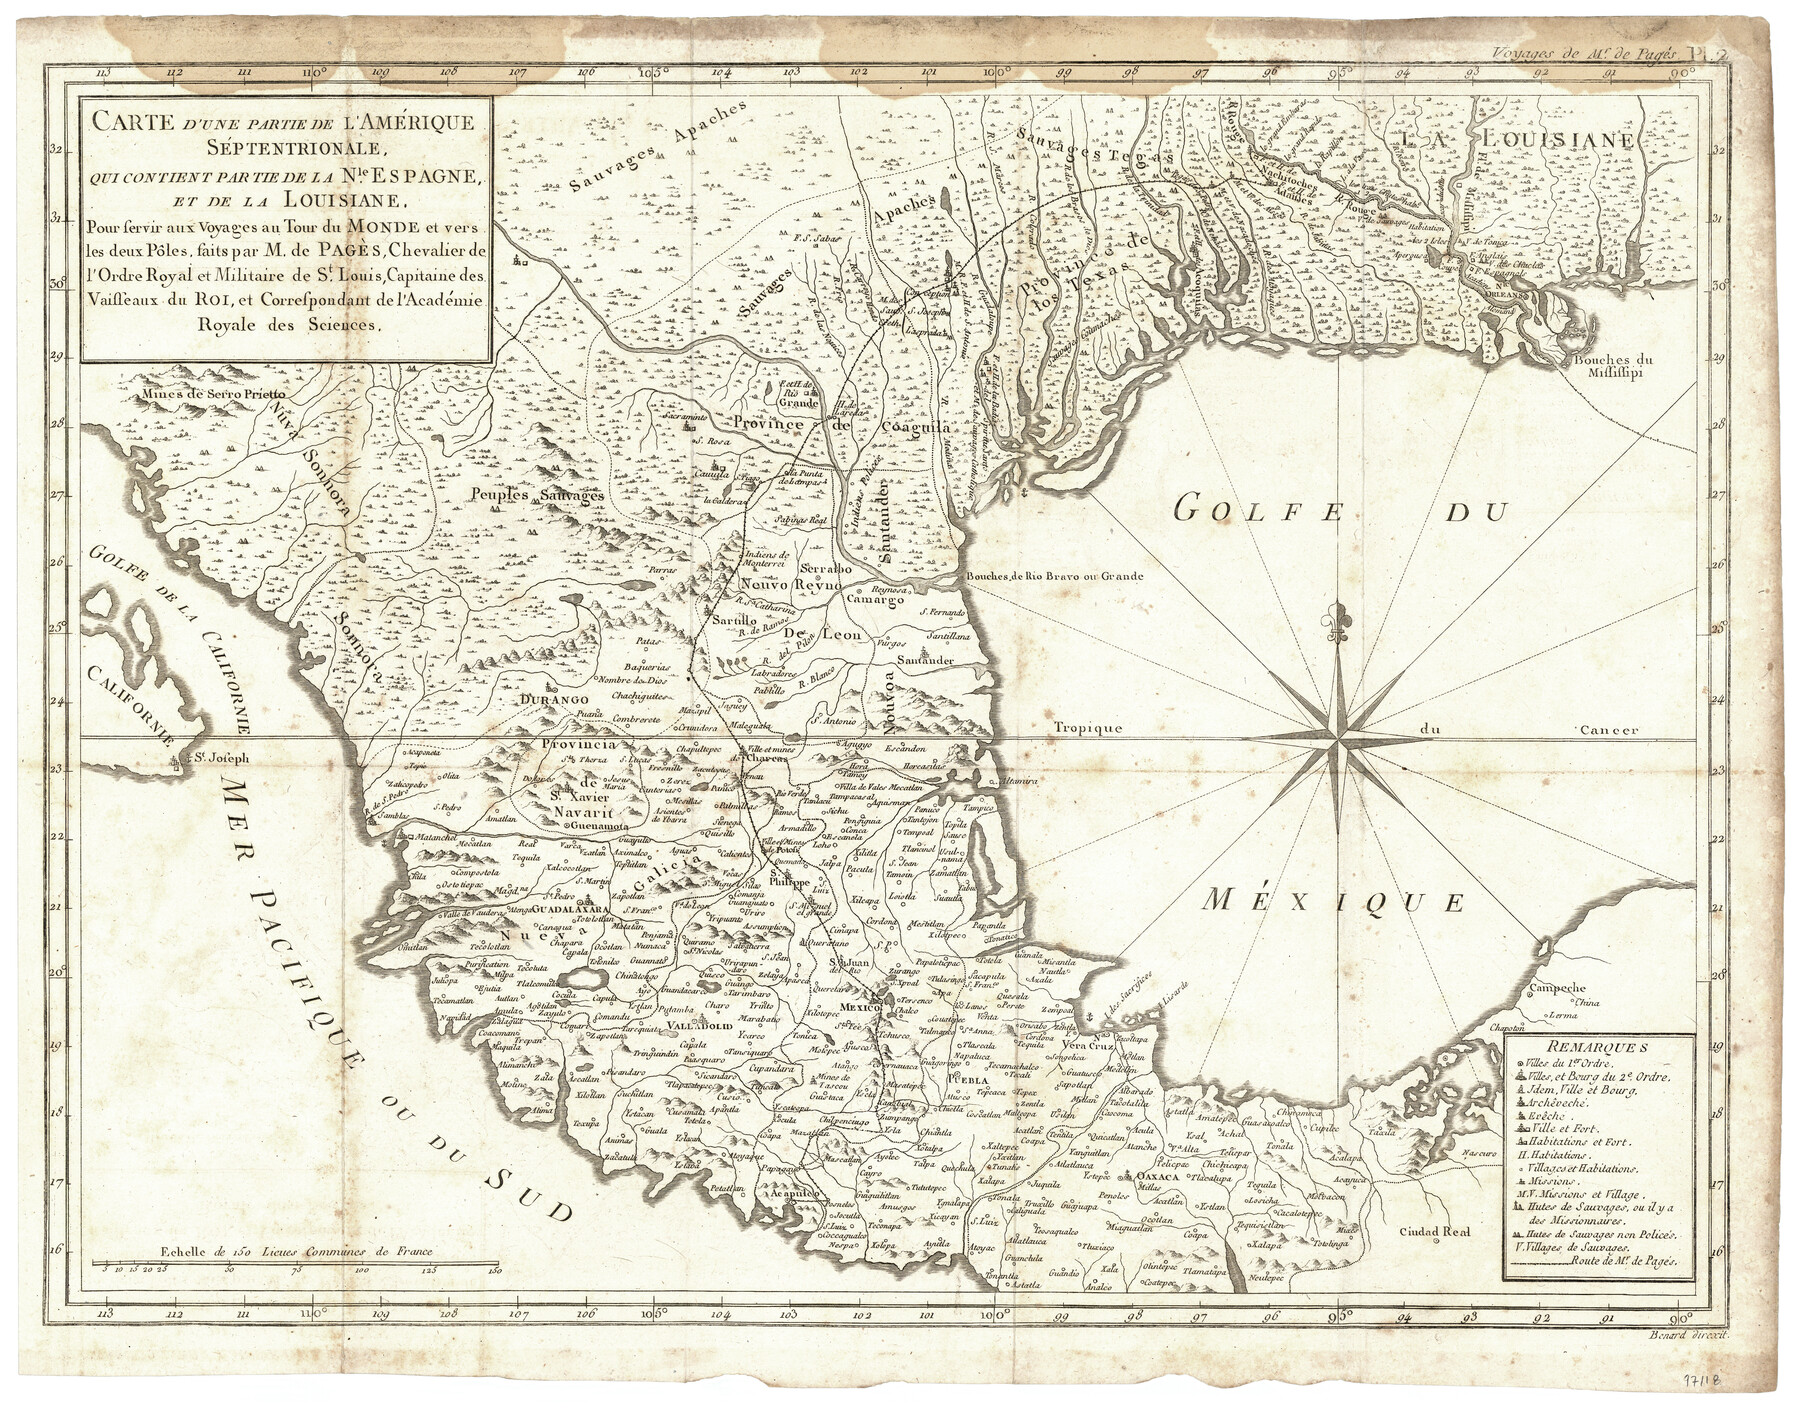 97118, Carte d'une partie de L'Amérique Séptentrionale, qui contient partie de la Nle. Espagne, et de la Louisiane, General Map Collection